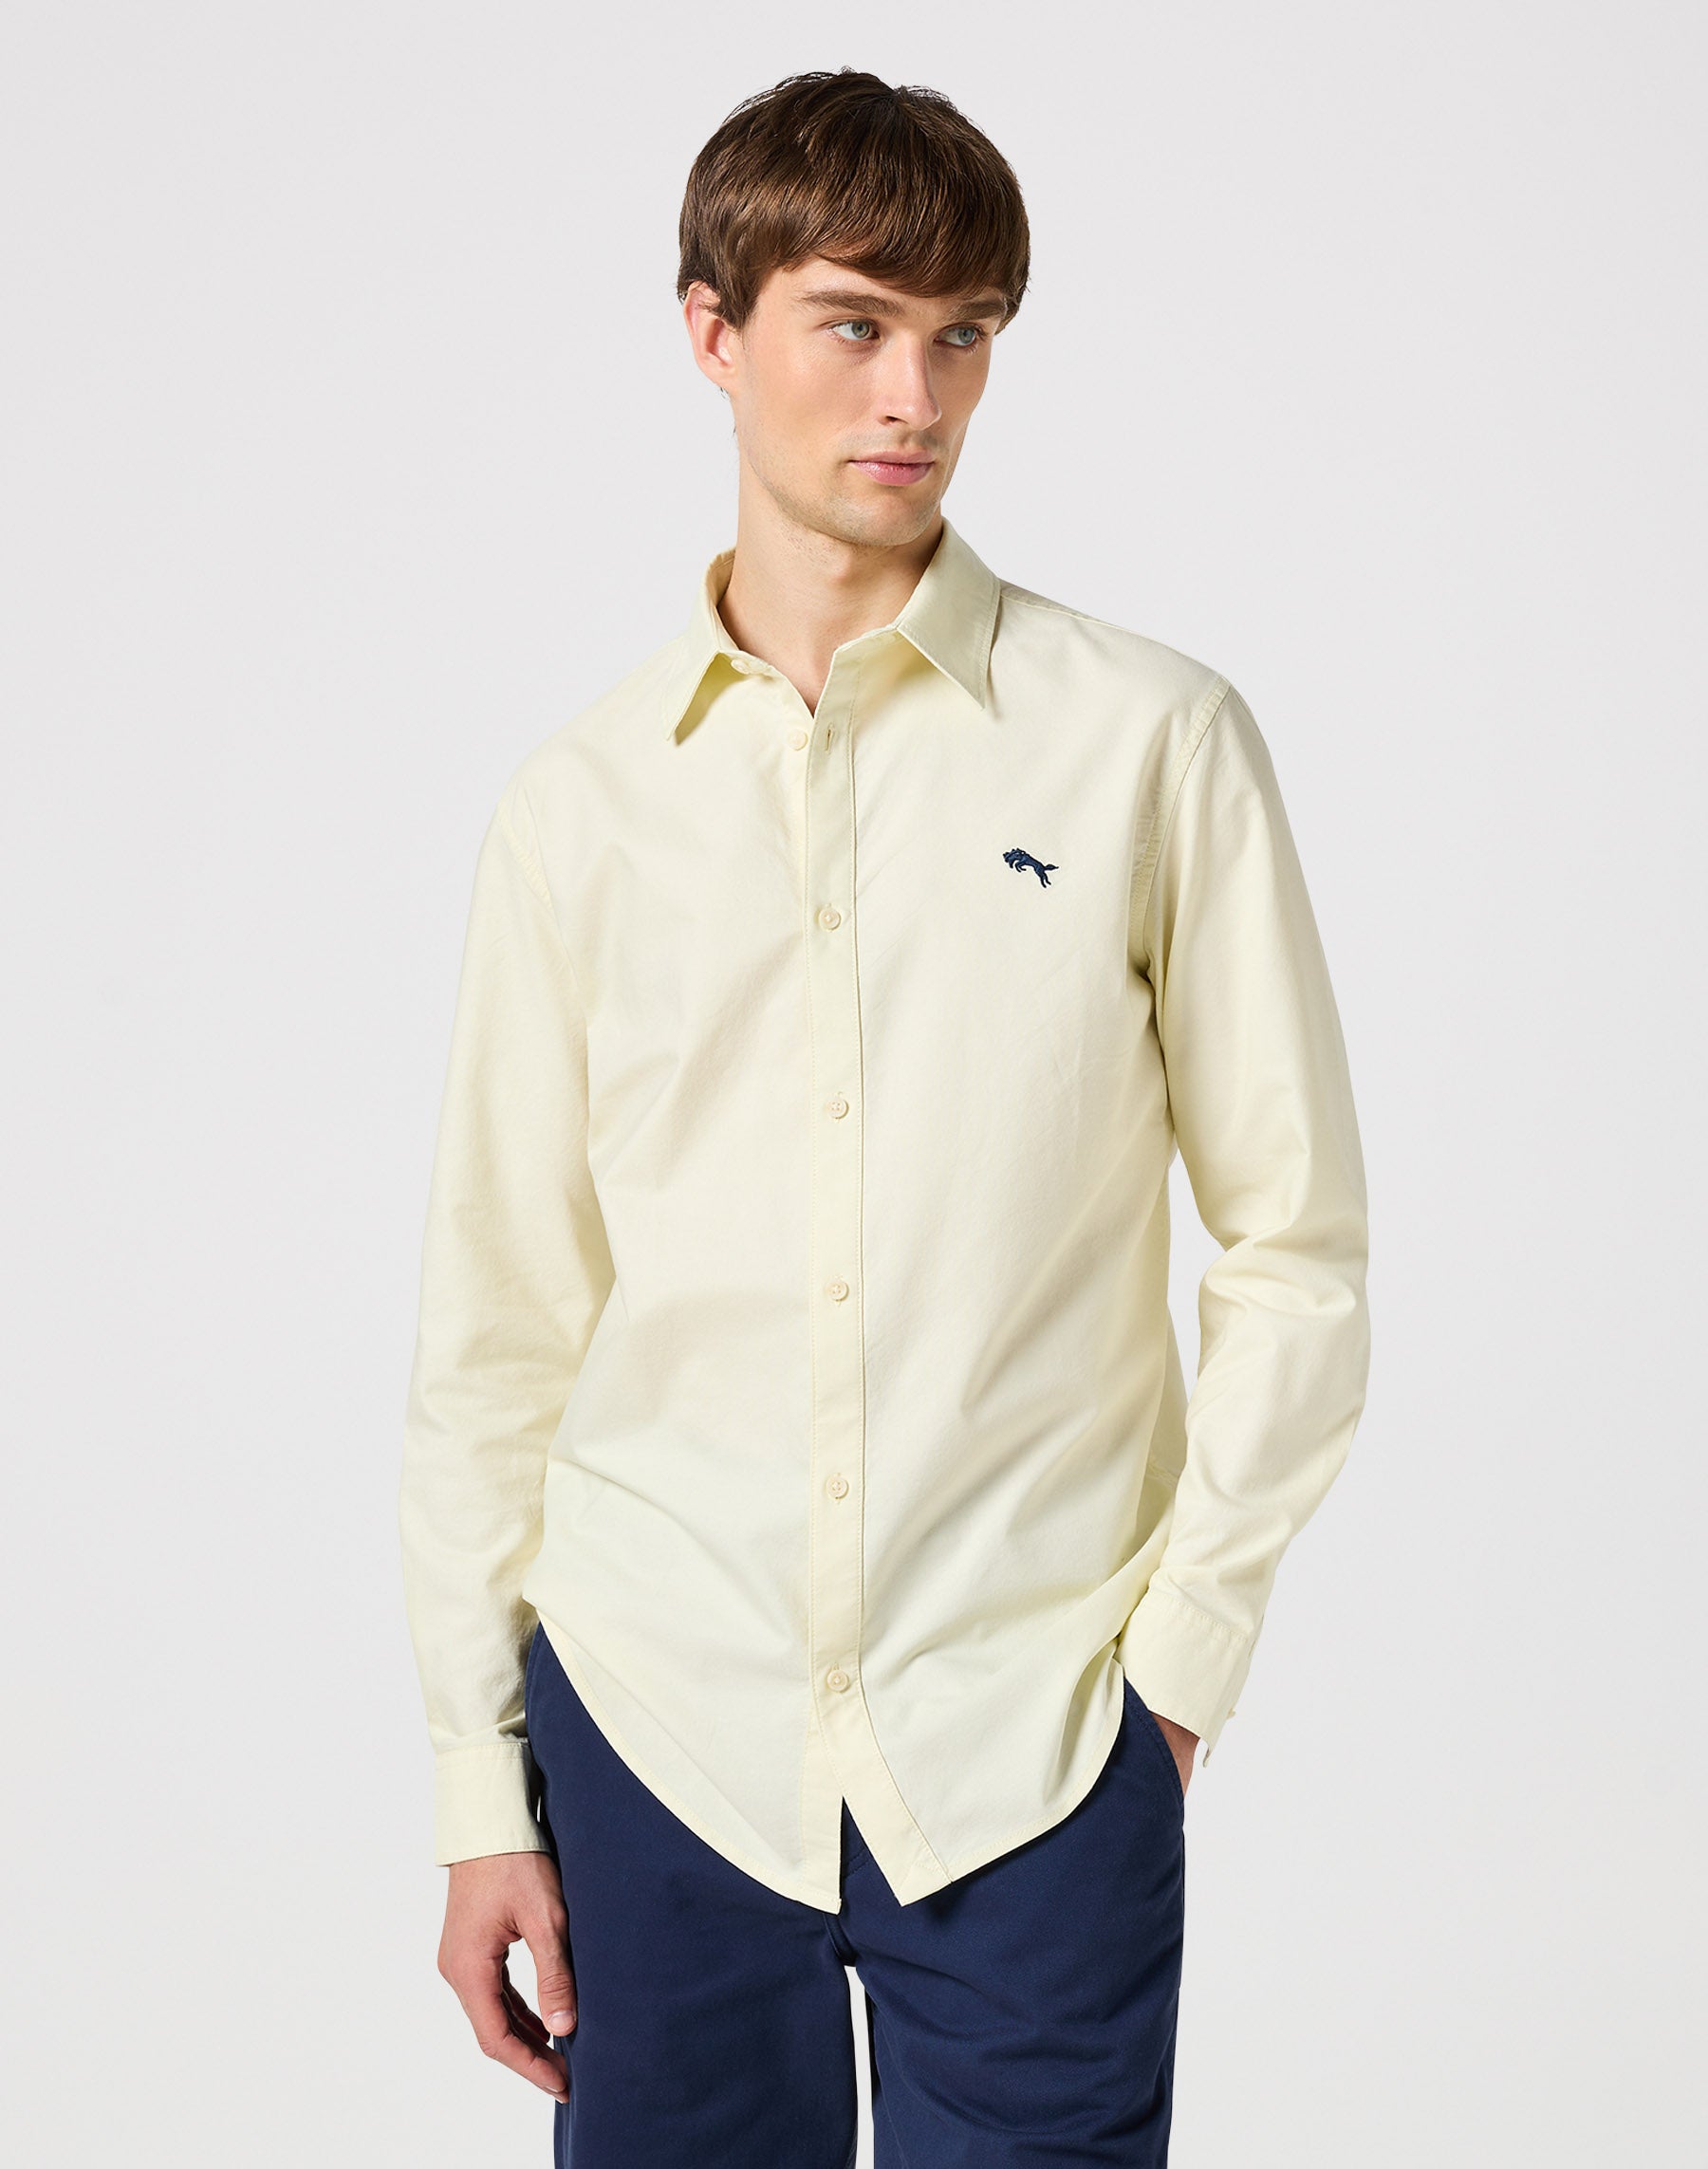 Longsleeves Shirt in Yellow Oxford Hemden Wrangler   